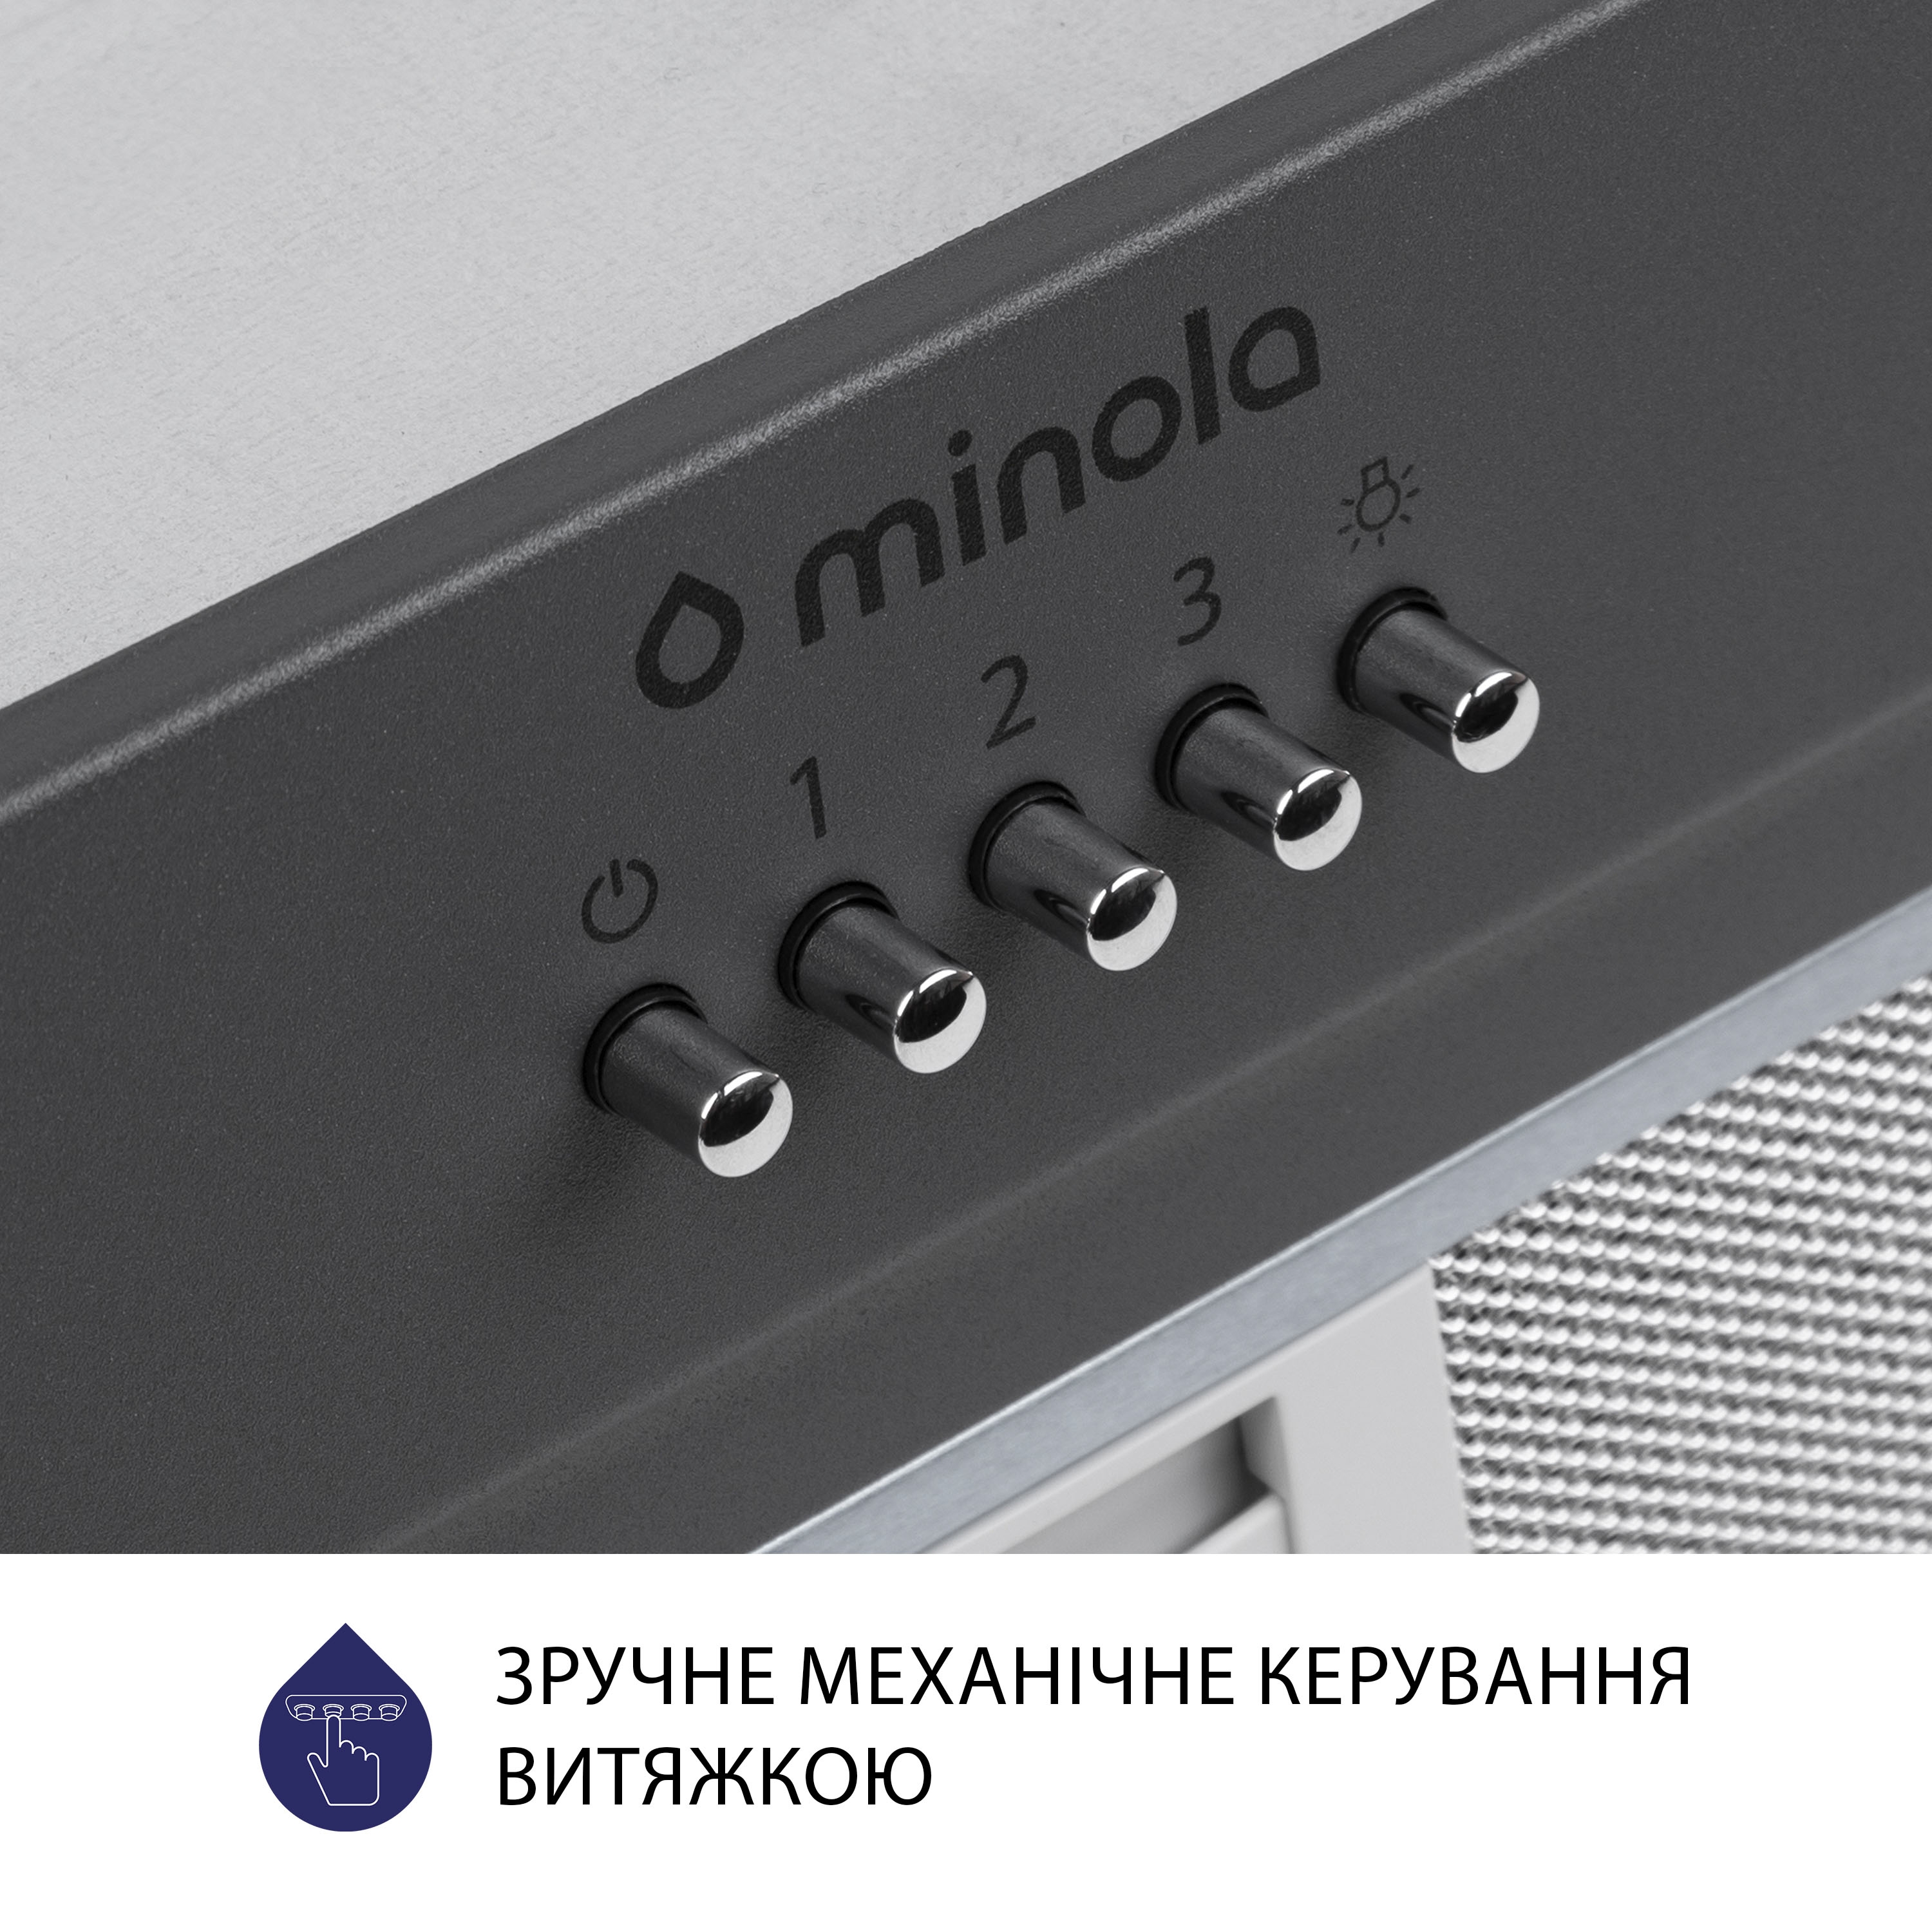 Витяжка кухонная полновстраиваемая Minola HBI 5202 GR 700 LED инструкция - изображение 6